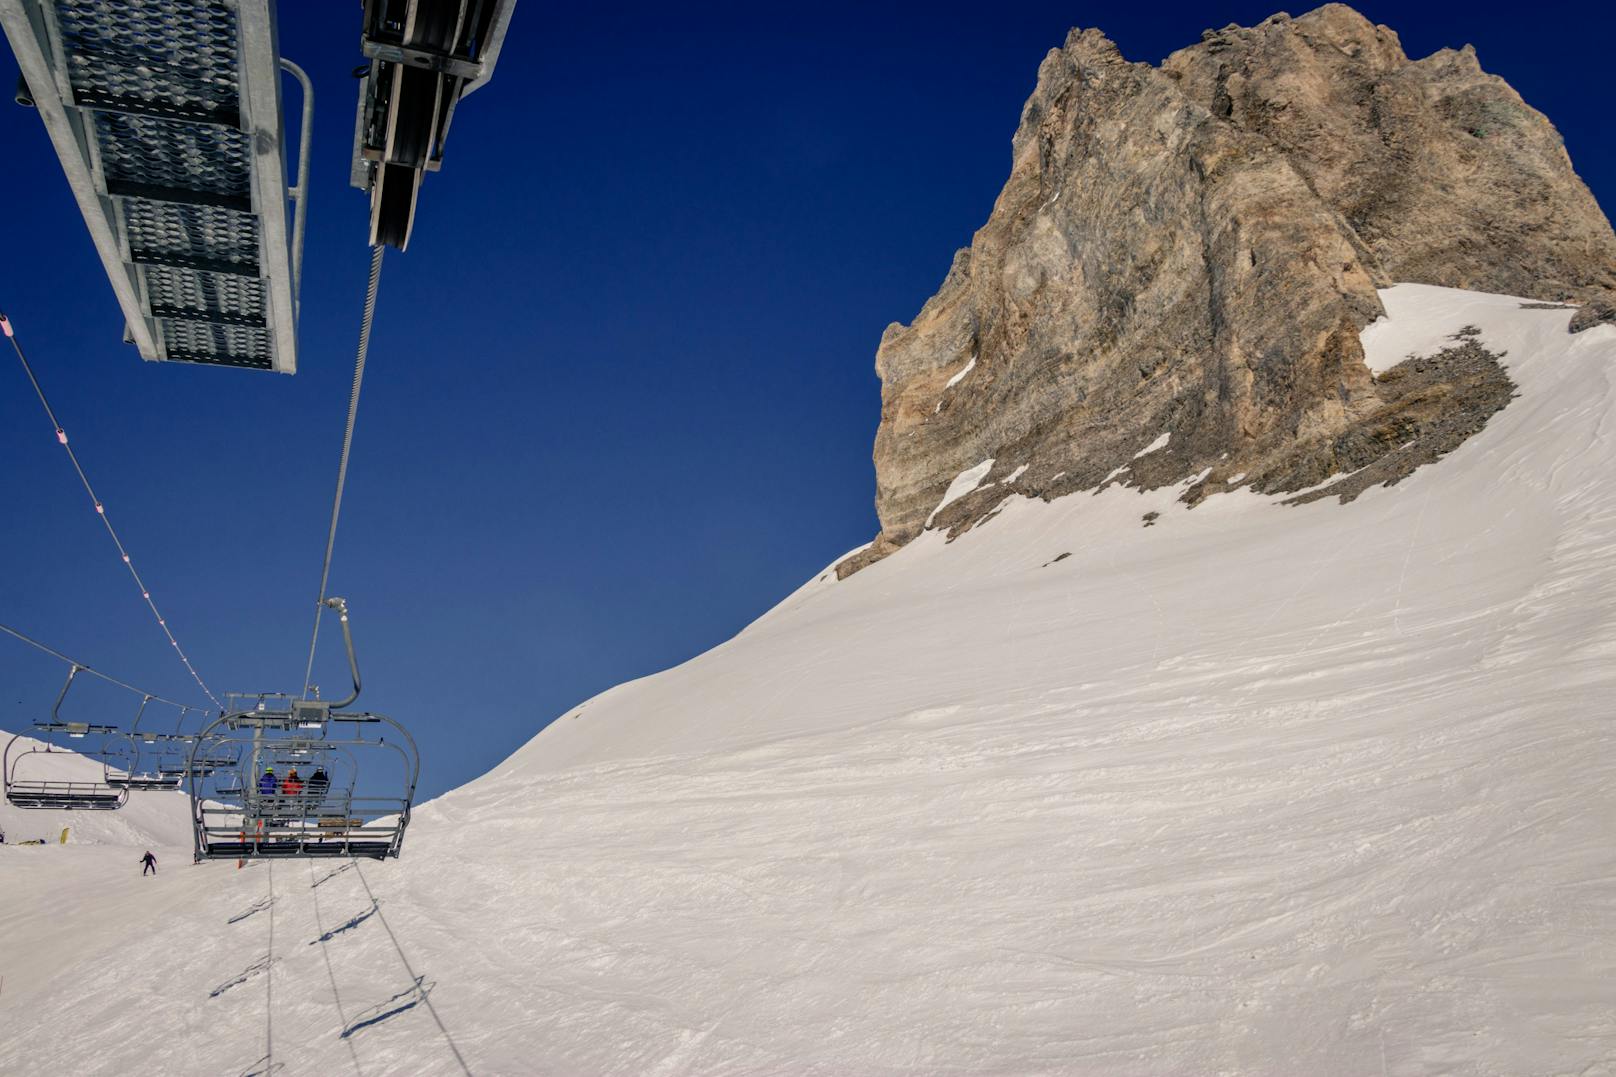 <strong>Platz 6:</strong> Im Gebiet "Espace Killy – Tignes &amp; Val d'Isere" in Frankreich finden Skifahrer 300 Fahrvergnügen um 63 Euro pro Tag.